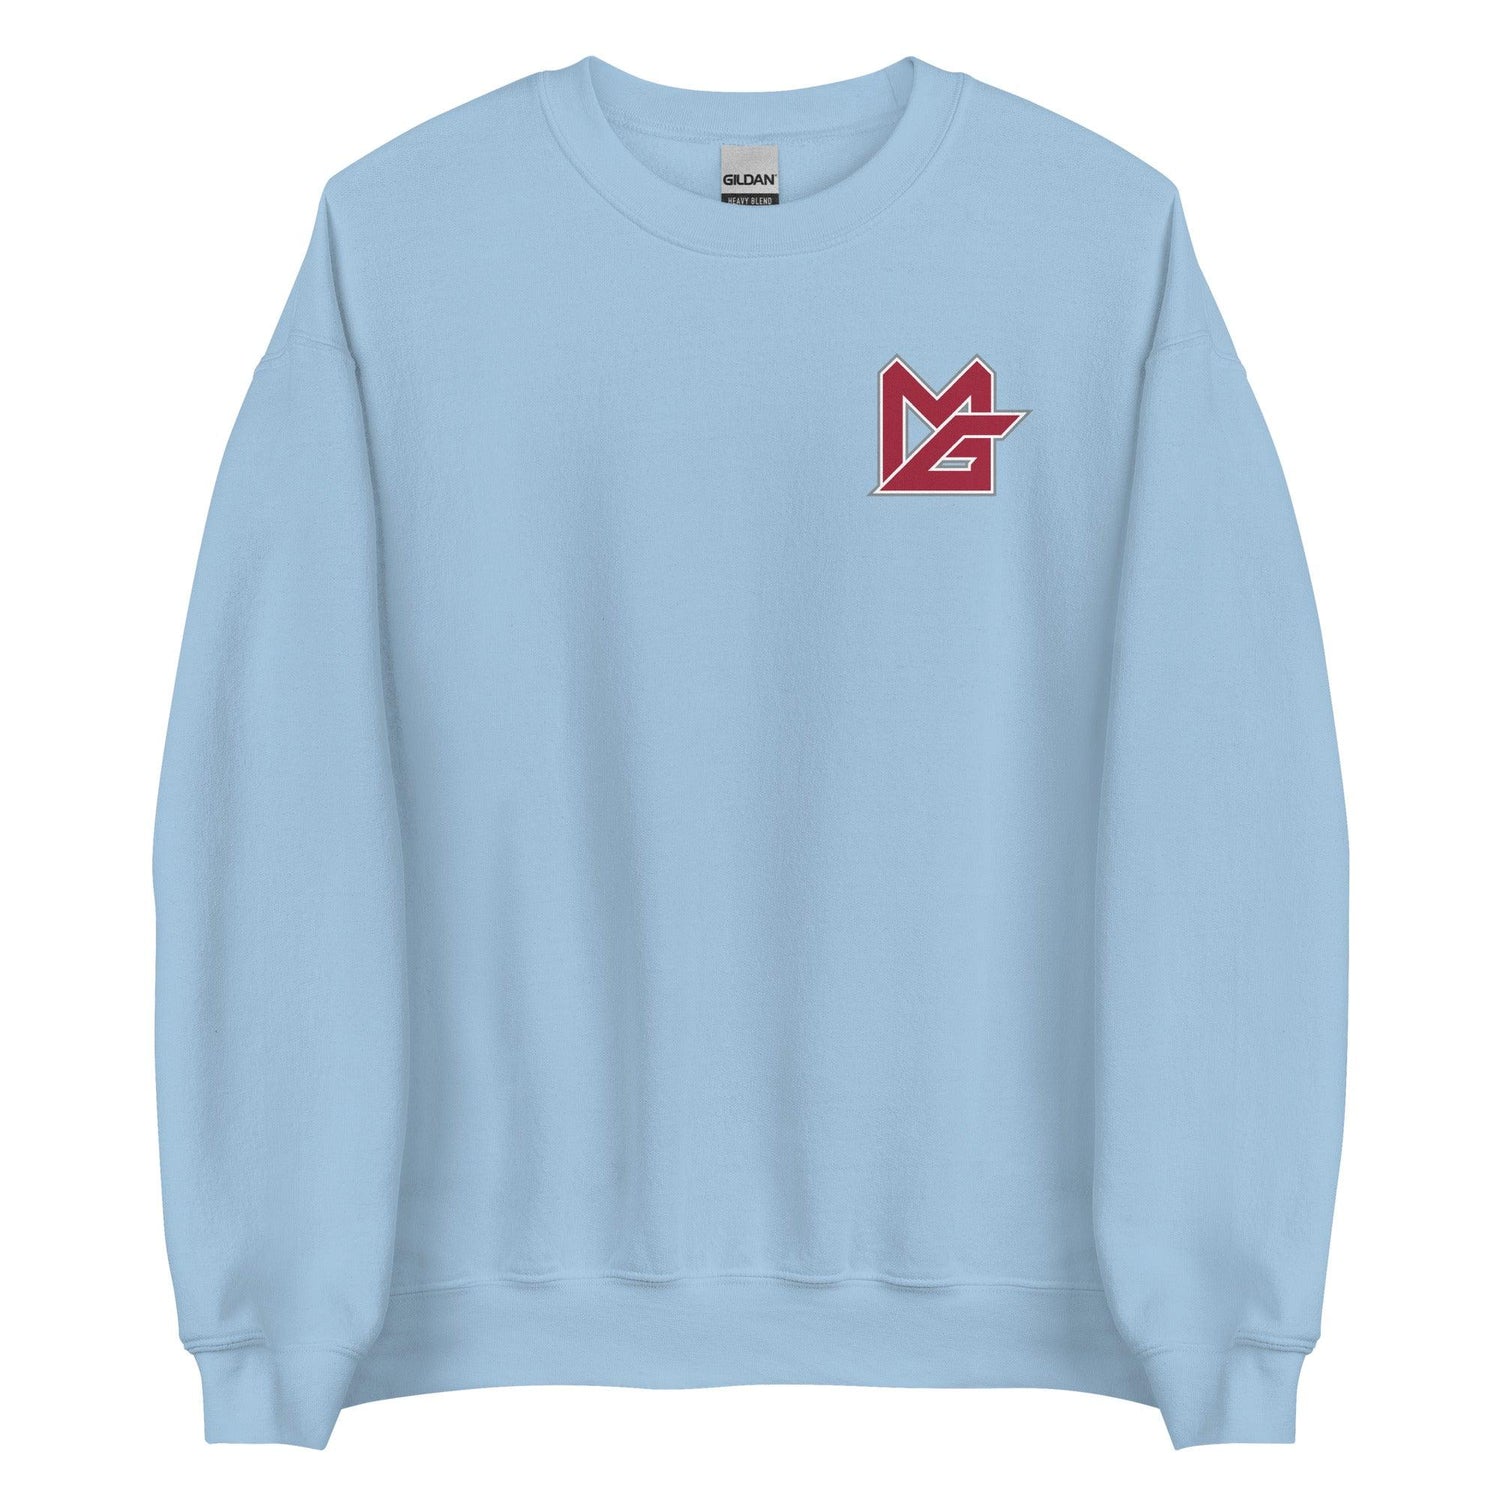 Monkell Goodwine "MG" Sweatshirt - Fan Arch